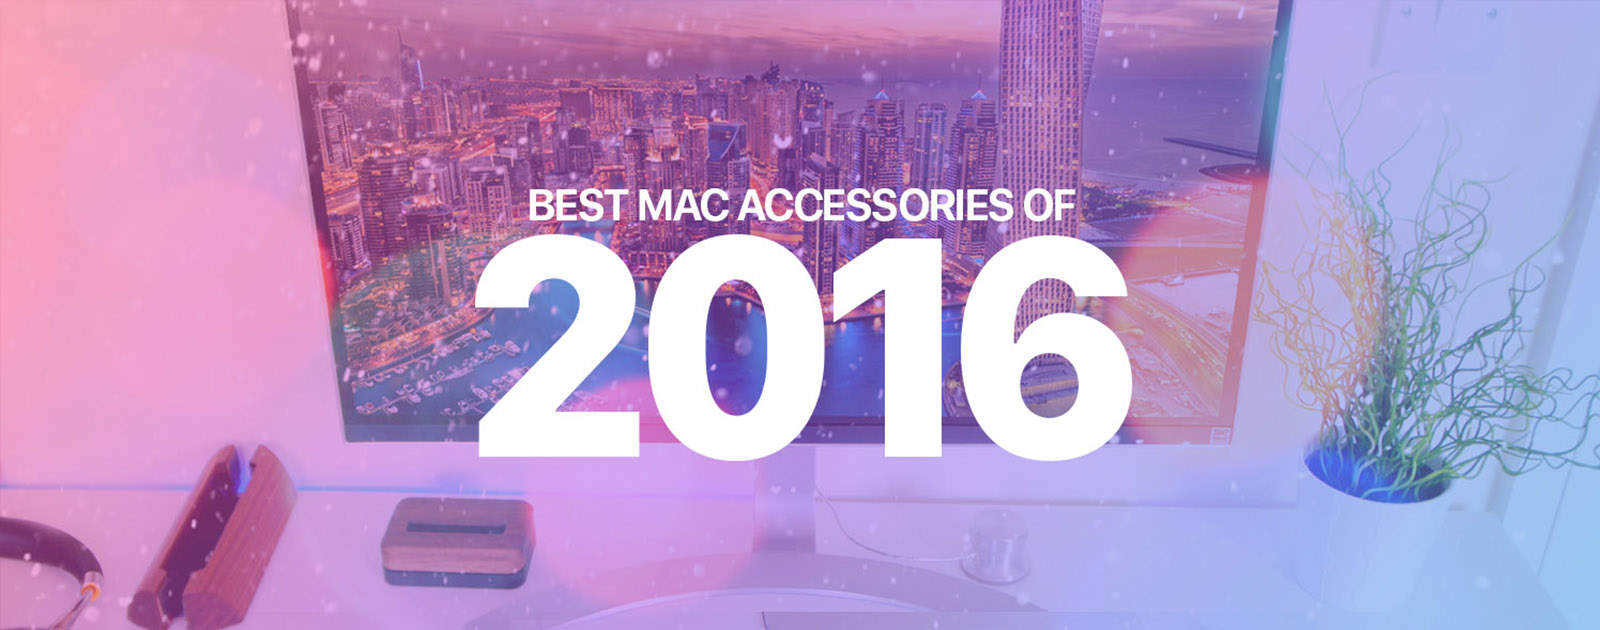 Best Mac accessories 2016